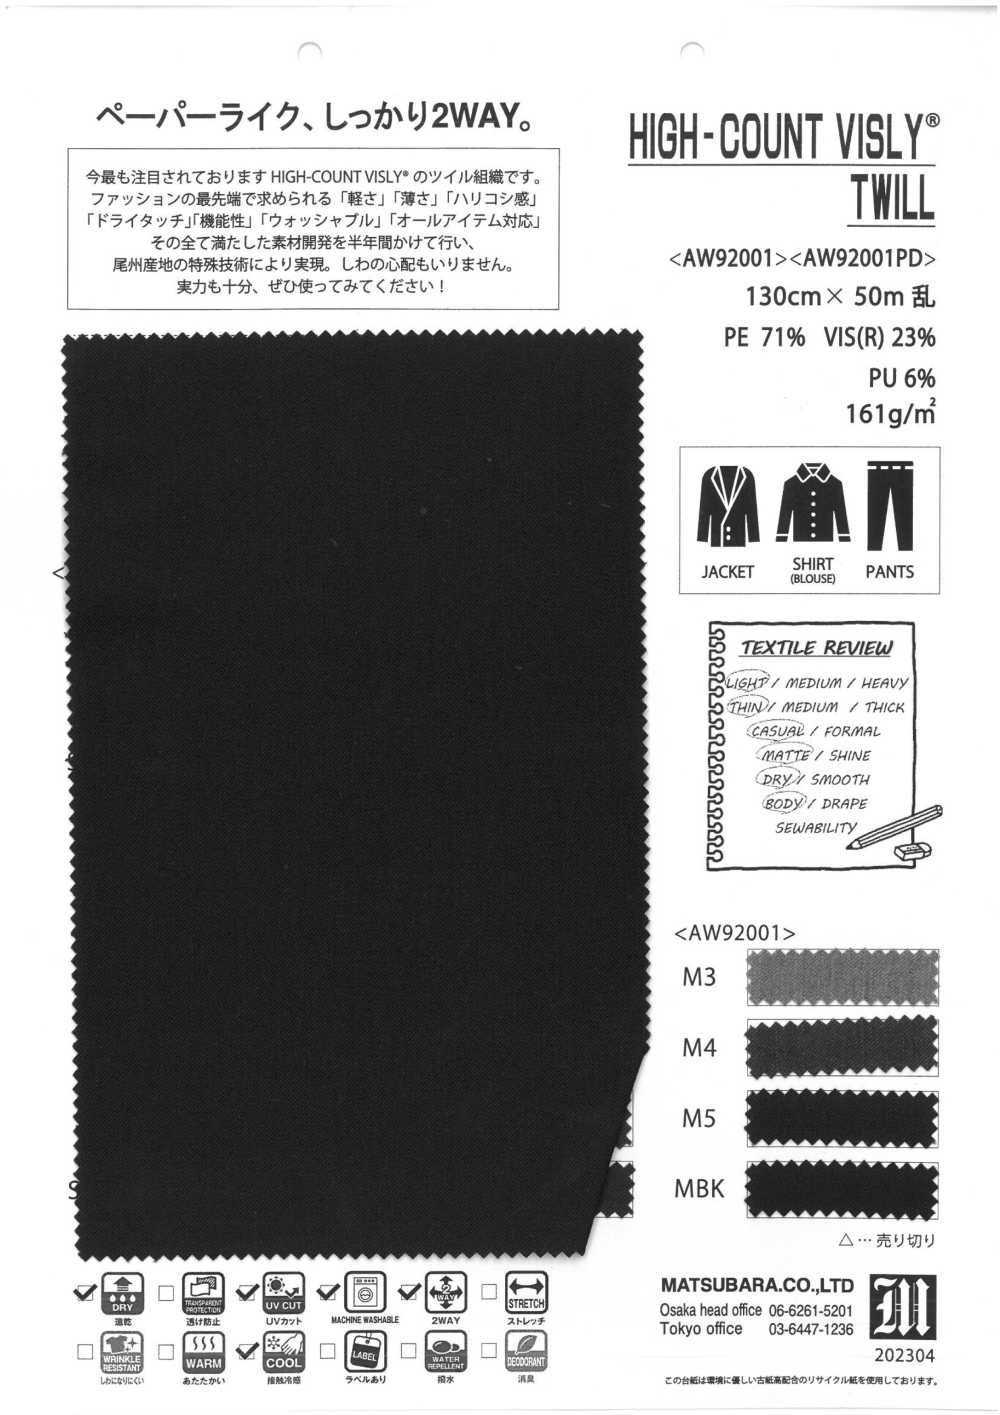 AW92001 Sarga Bisley De Recuento Alto[Fabrica Textil] Matsubara